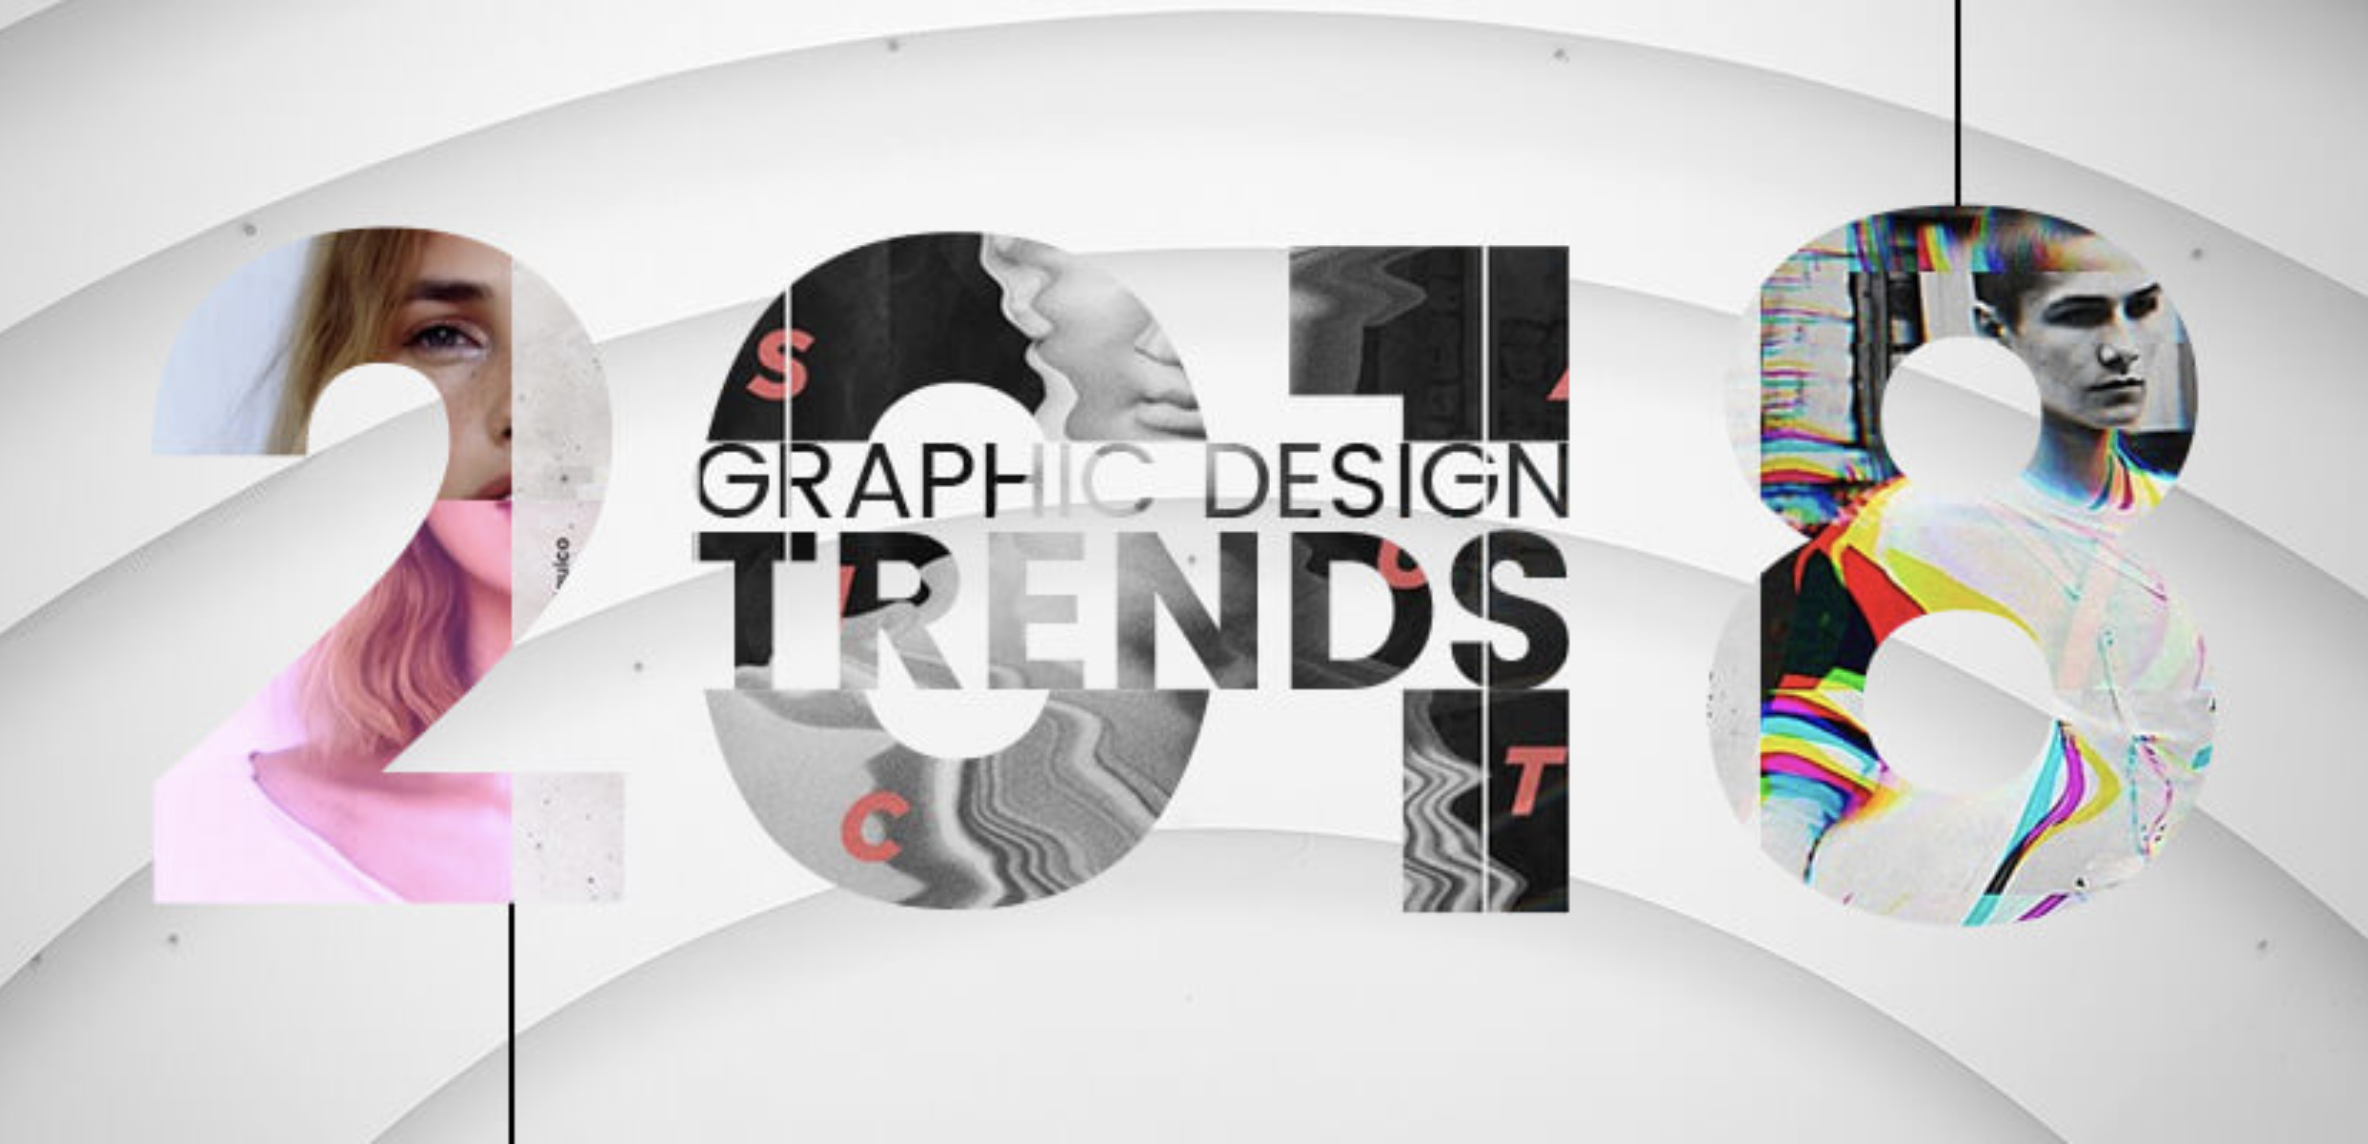 Top graphic. Современные тренды в графическом дизайне. Тренды графического дизайна. Модные тенденции в графическом дизайне. Тренды в дизайне рекламы.